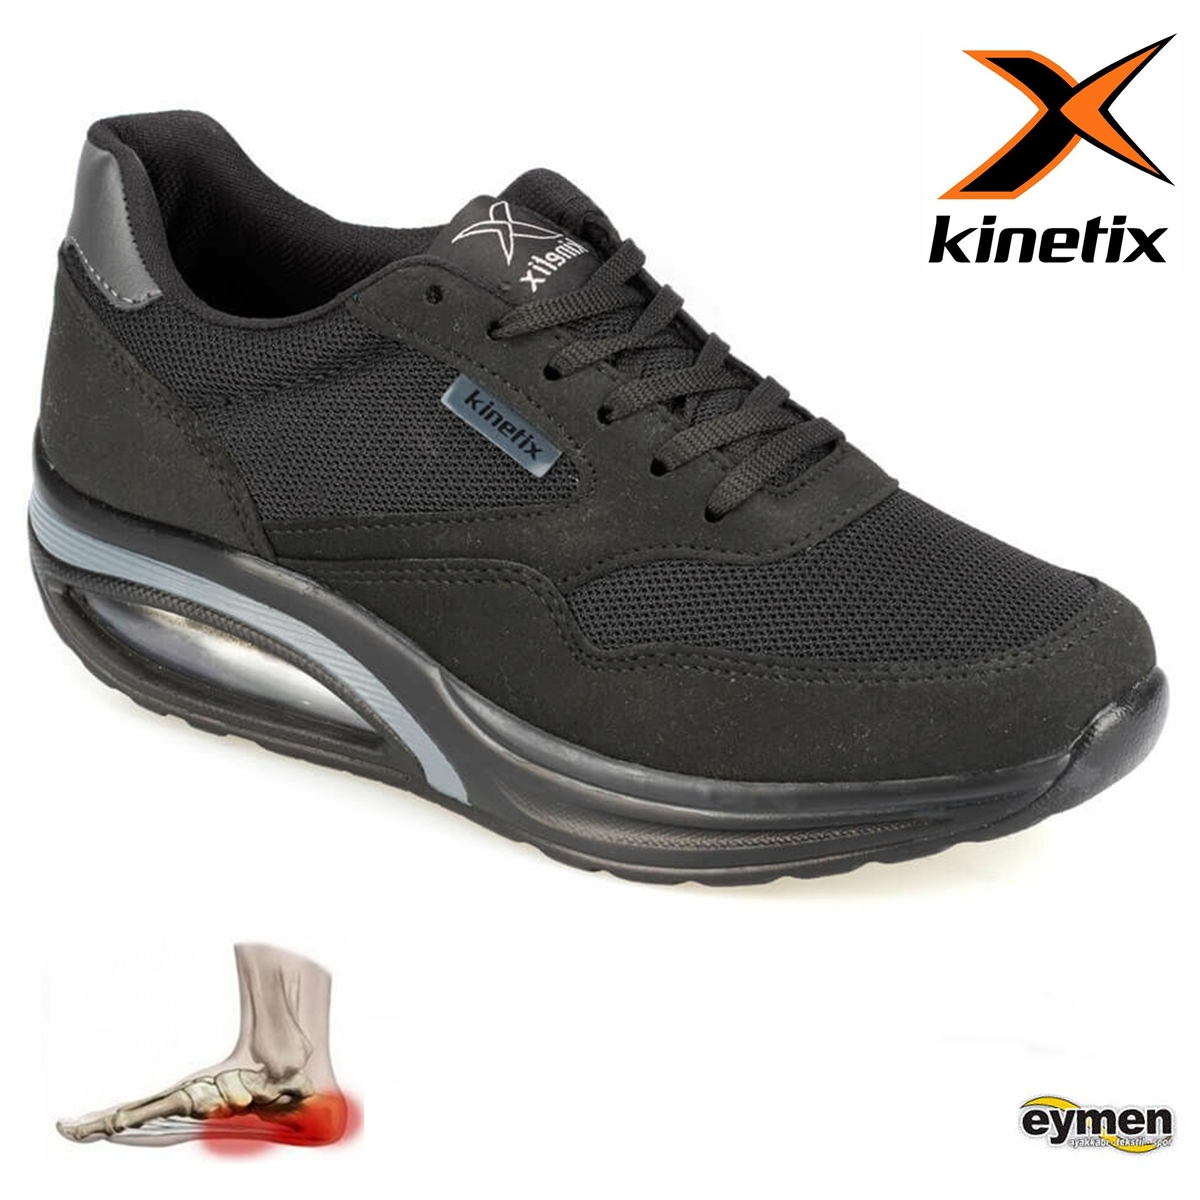 Kinetix Aneta Ortopedik Yürüyüş Koşu Spor Ayakkabısı